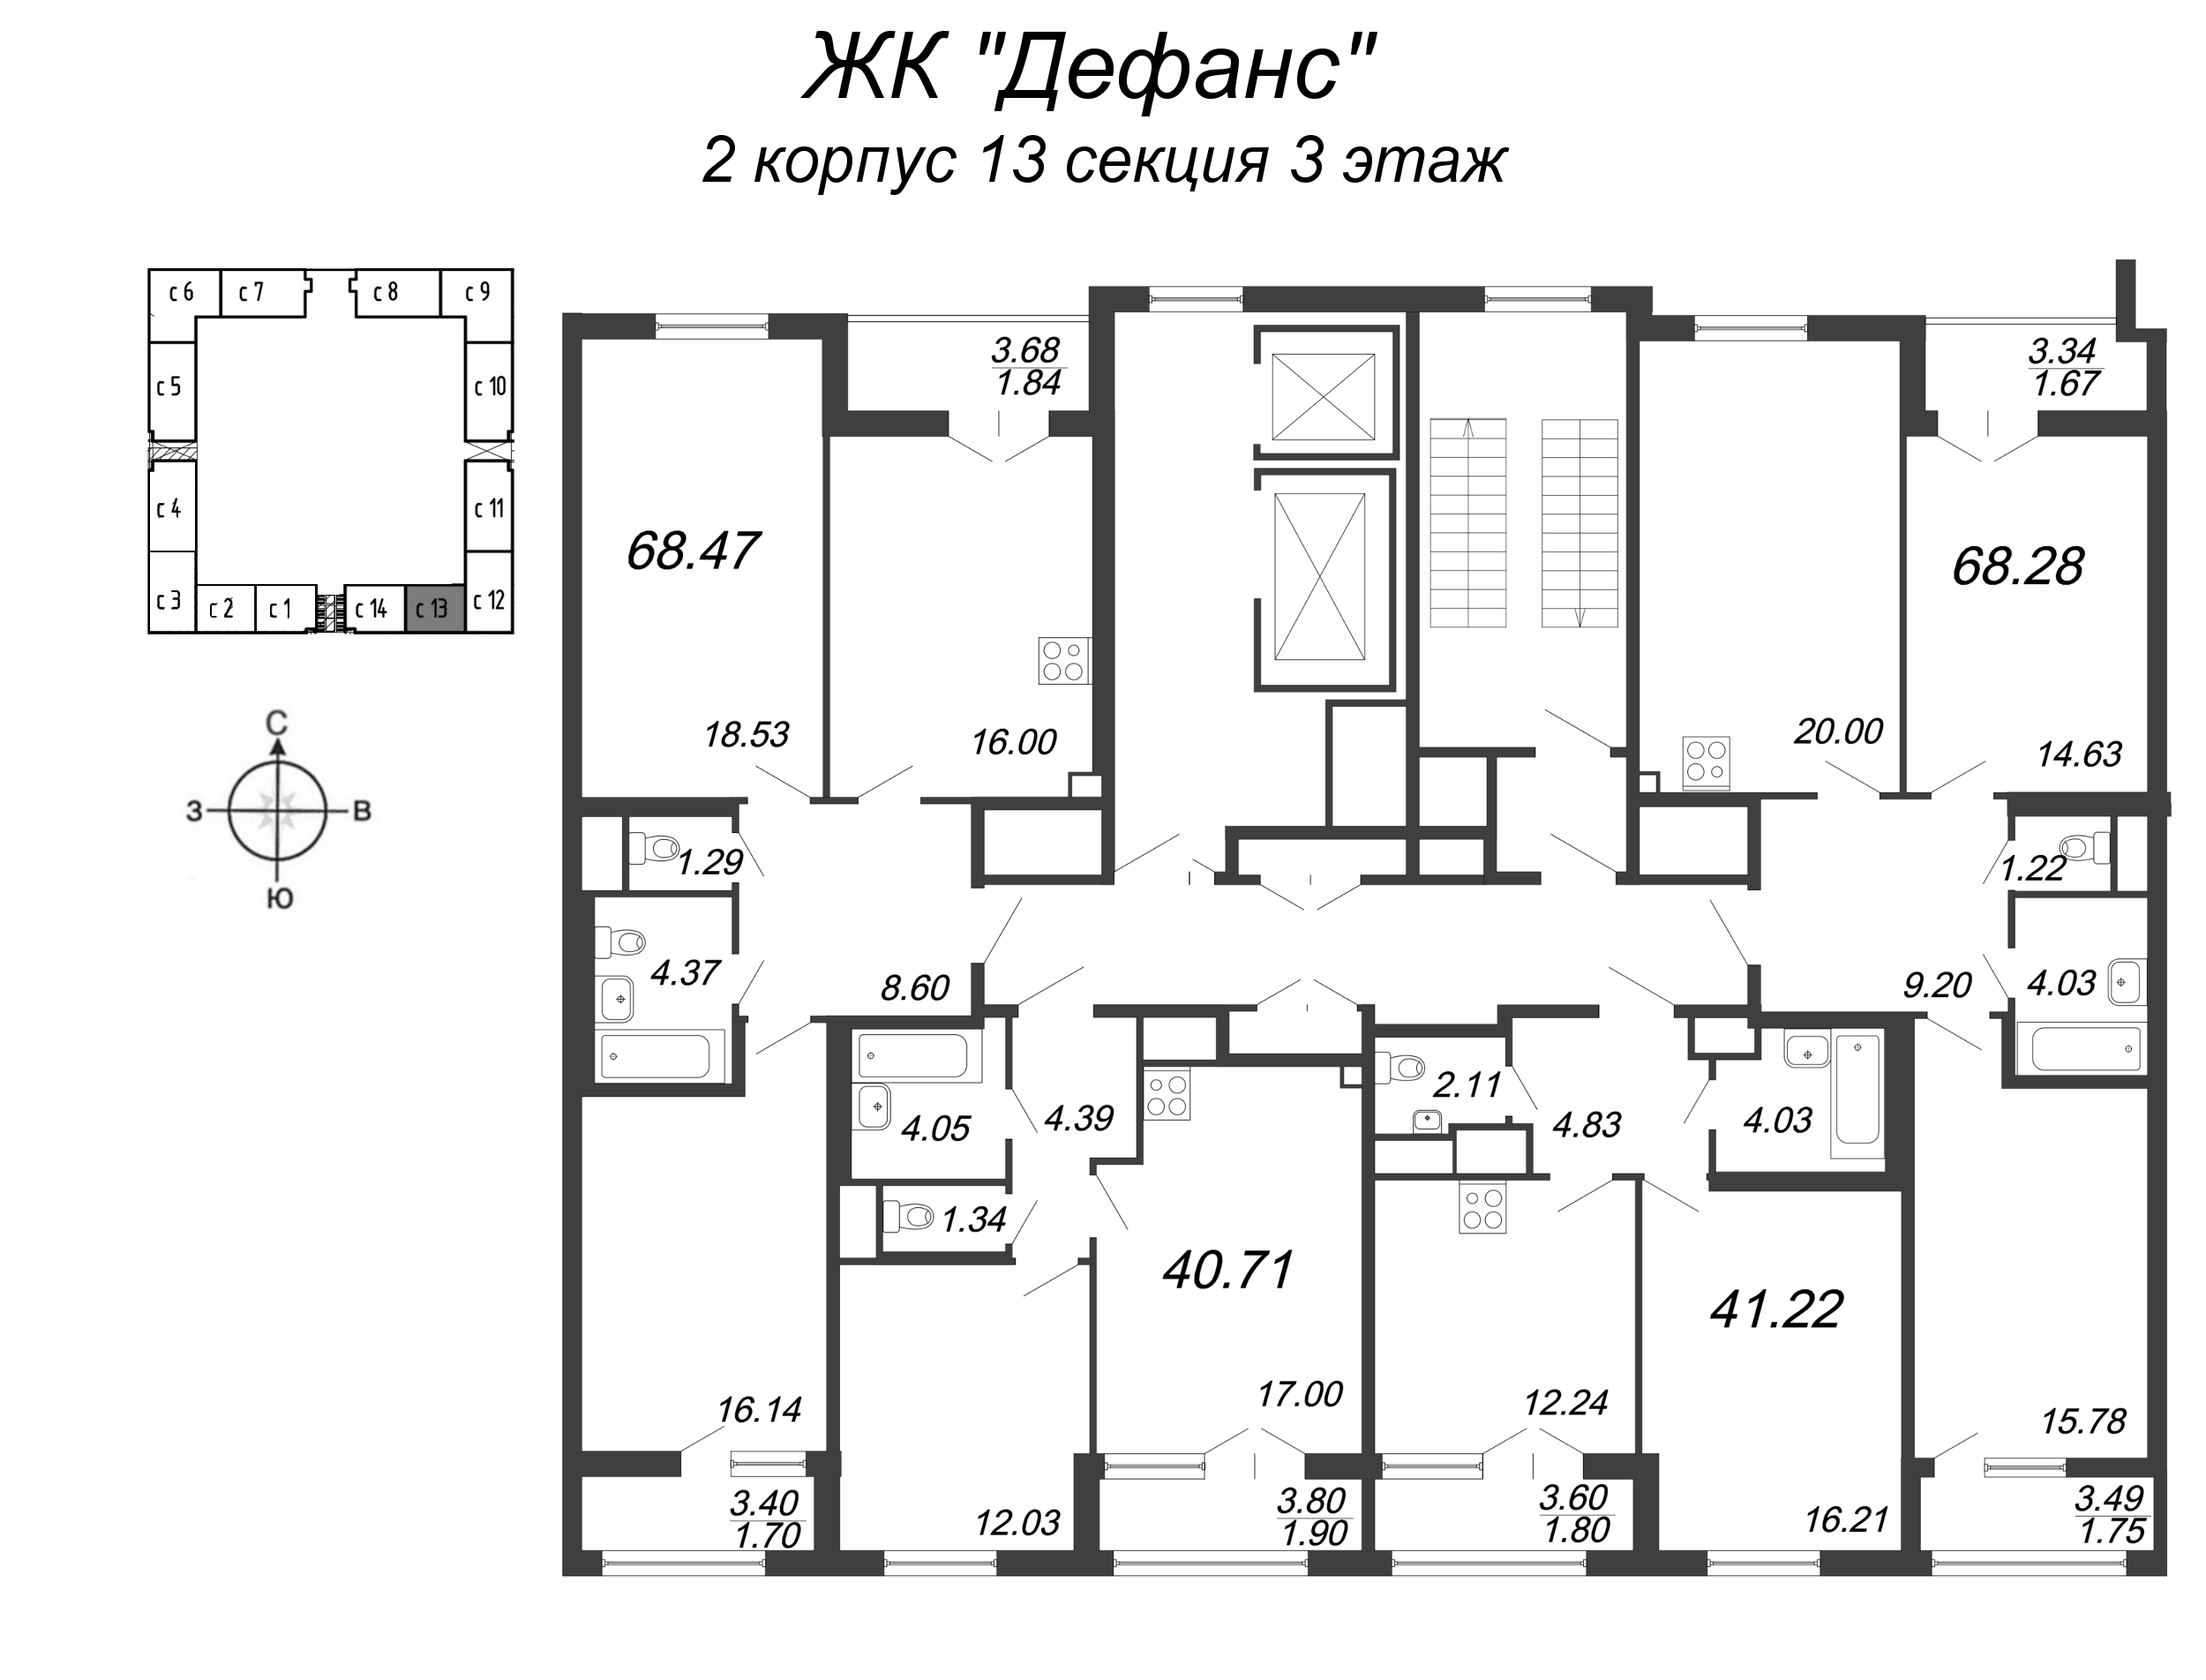 3-комнатная (Евро) квартира, 68.28 м² в ЖК "Дефанс Бизнес" - планировка этажа